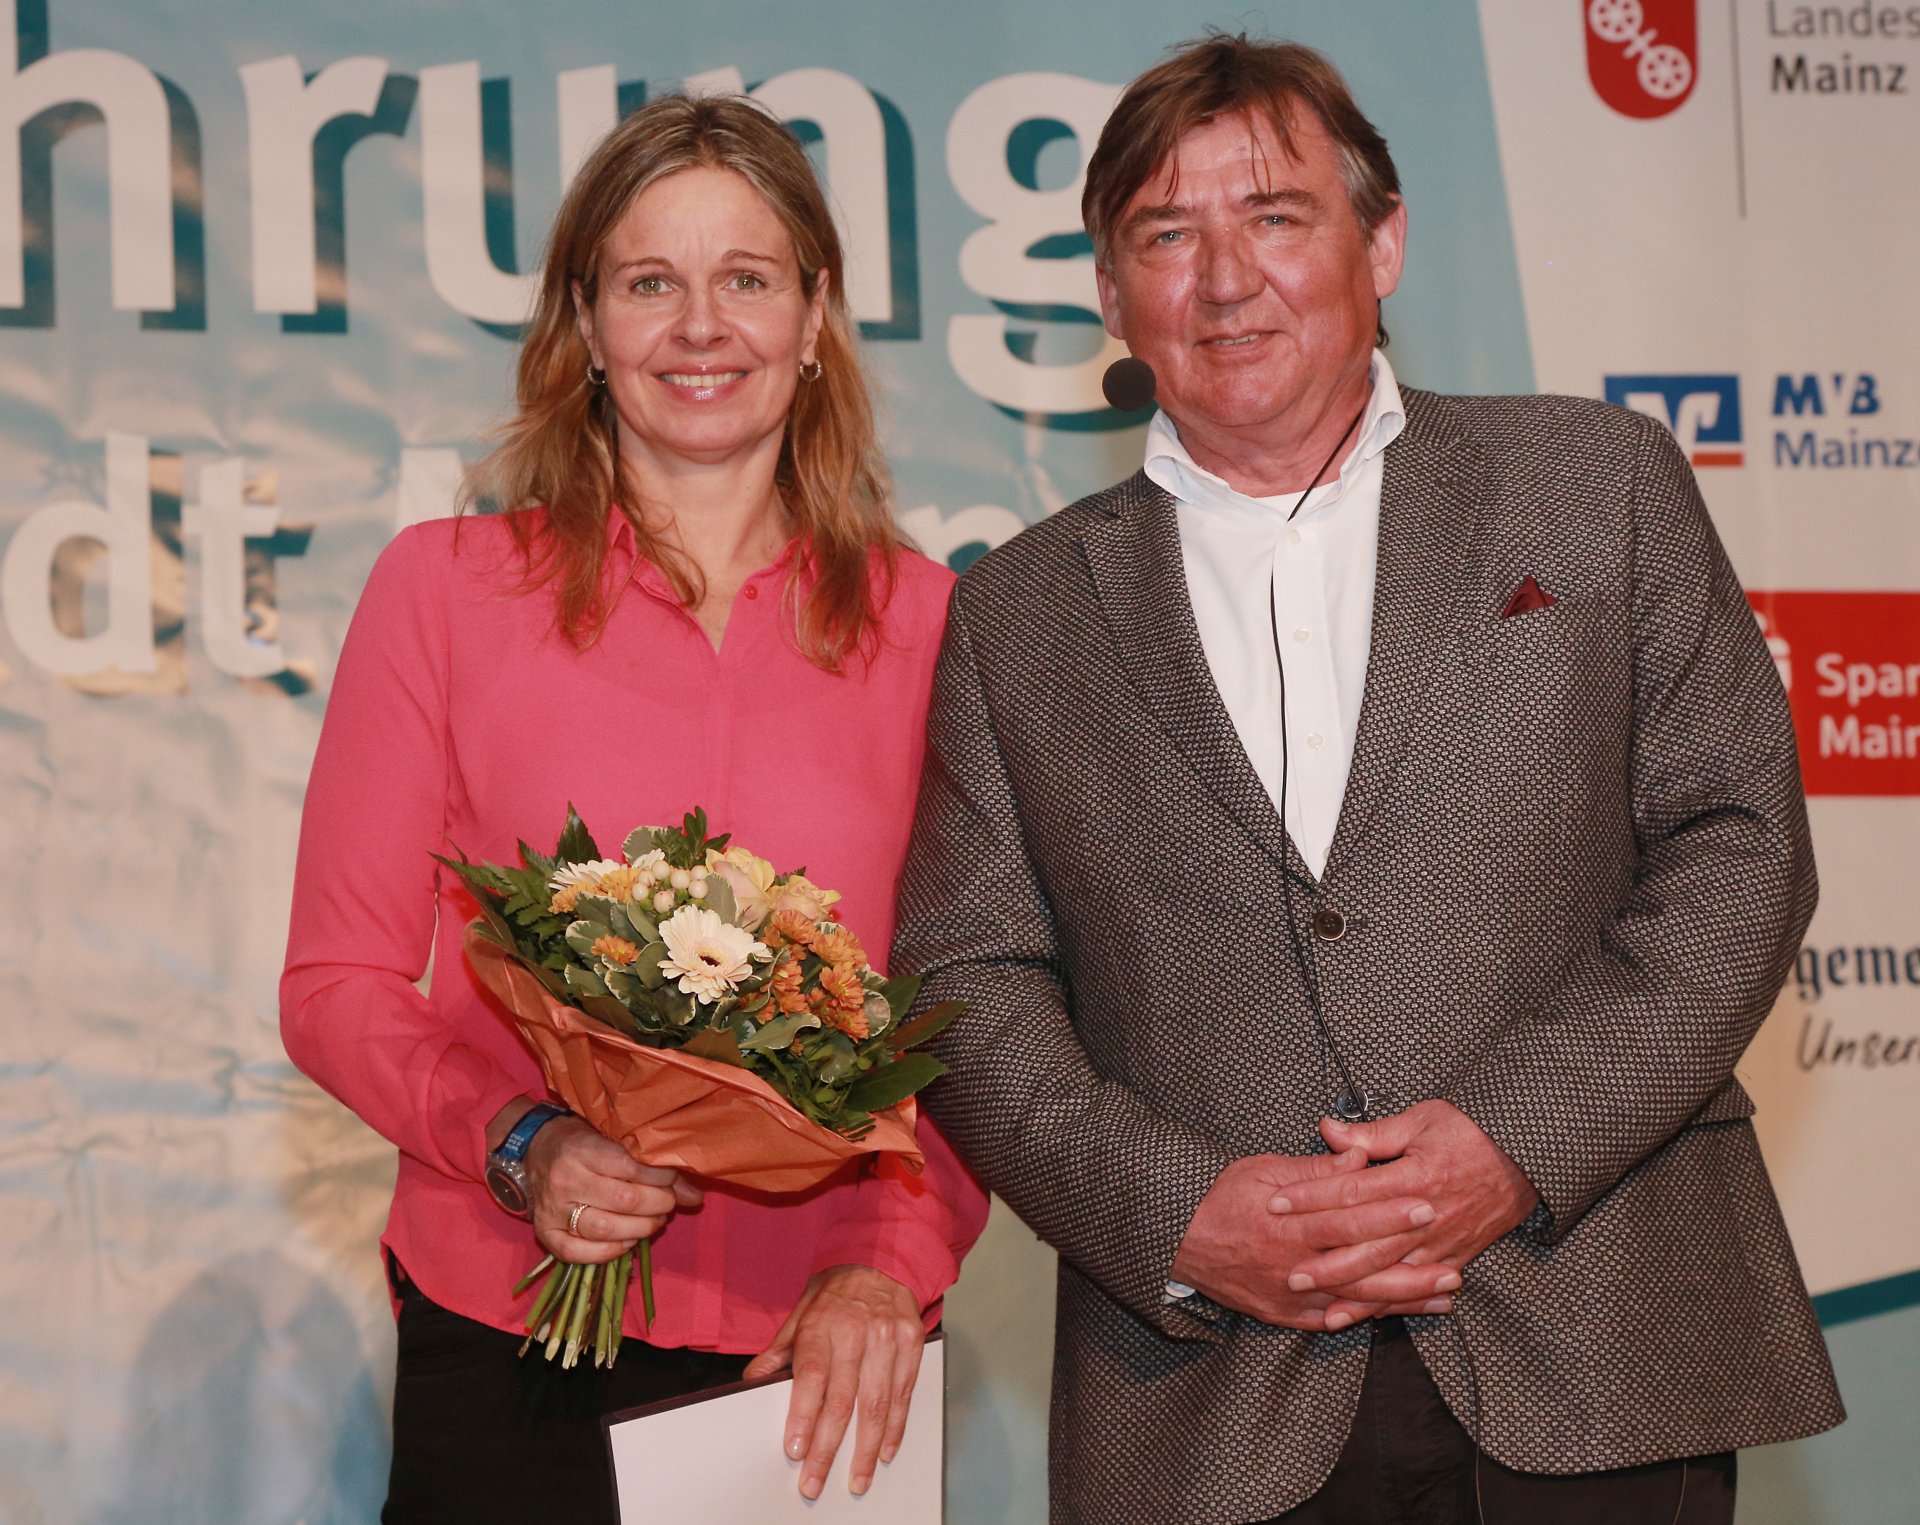 Die Legende des Freiwasserschwimmsports: Angela Maurer vom SSV Undine Mainz ist auch mit 43 Jahren immer noch hungrig (beziehungsweise durstig) und will sich über 25 Kilometer für die Weltmeisterschaften qualifizieren.